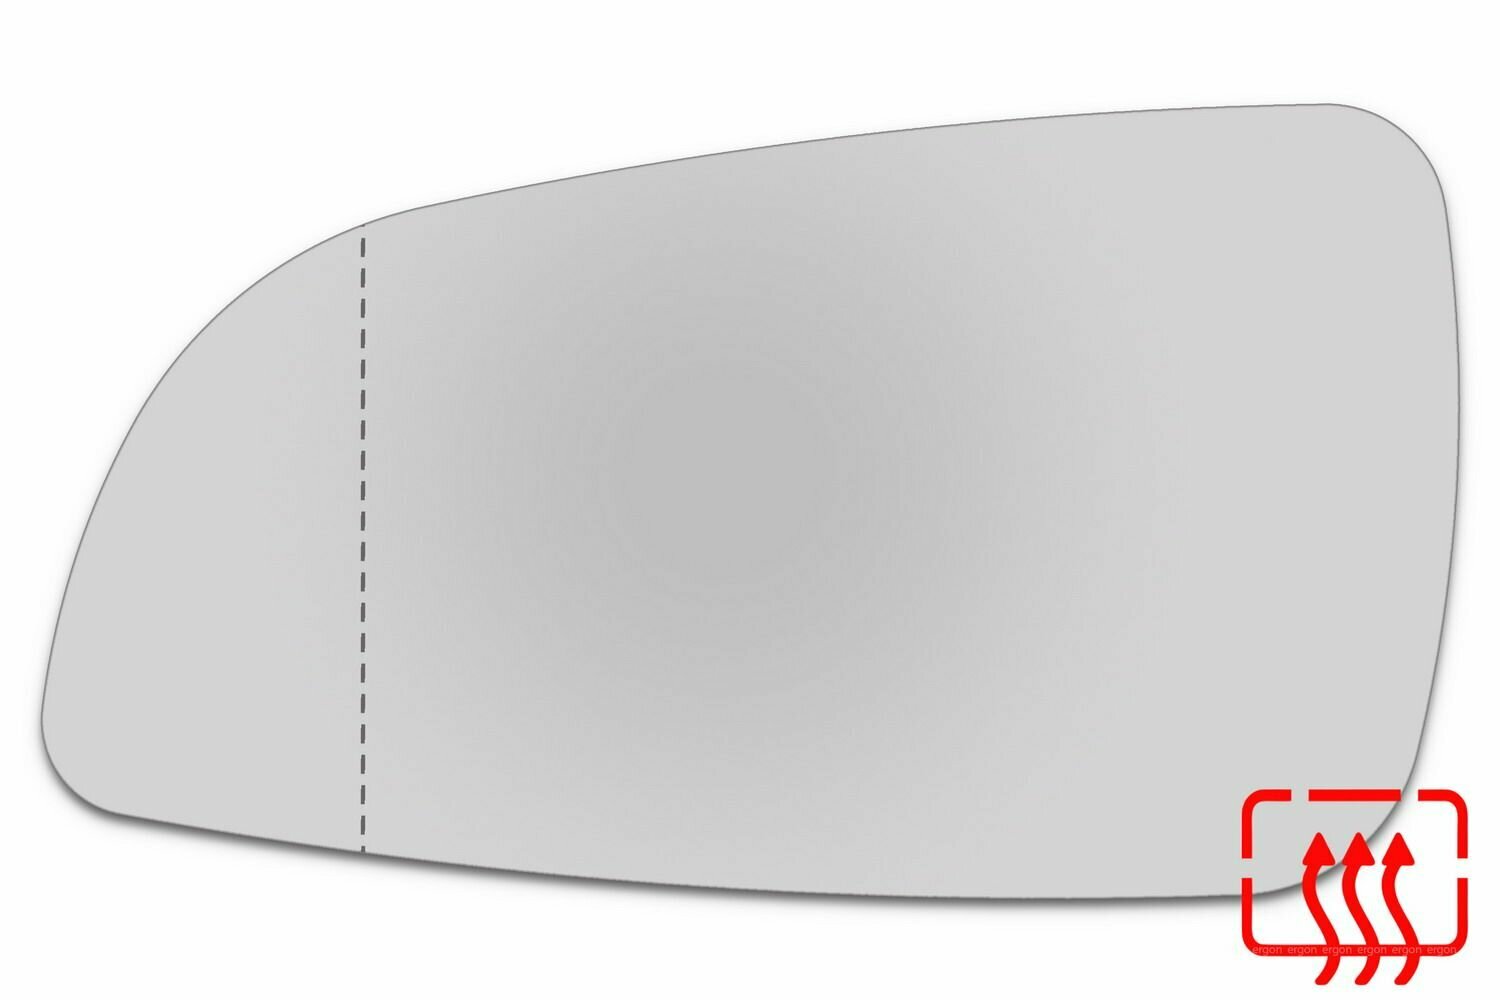 Зеркальный элемент левый OPEL Astra H (04-09) асферика нейтральный с обогревом. Размер зеркального элемента по центральной оси: высота - 96 мм, длина - 172 мм.